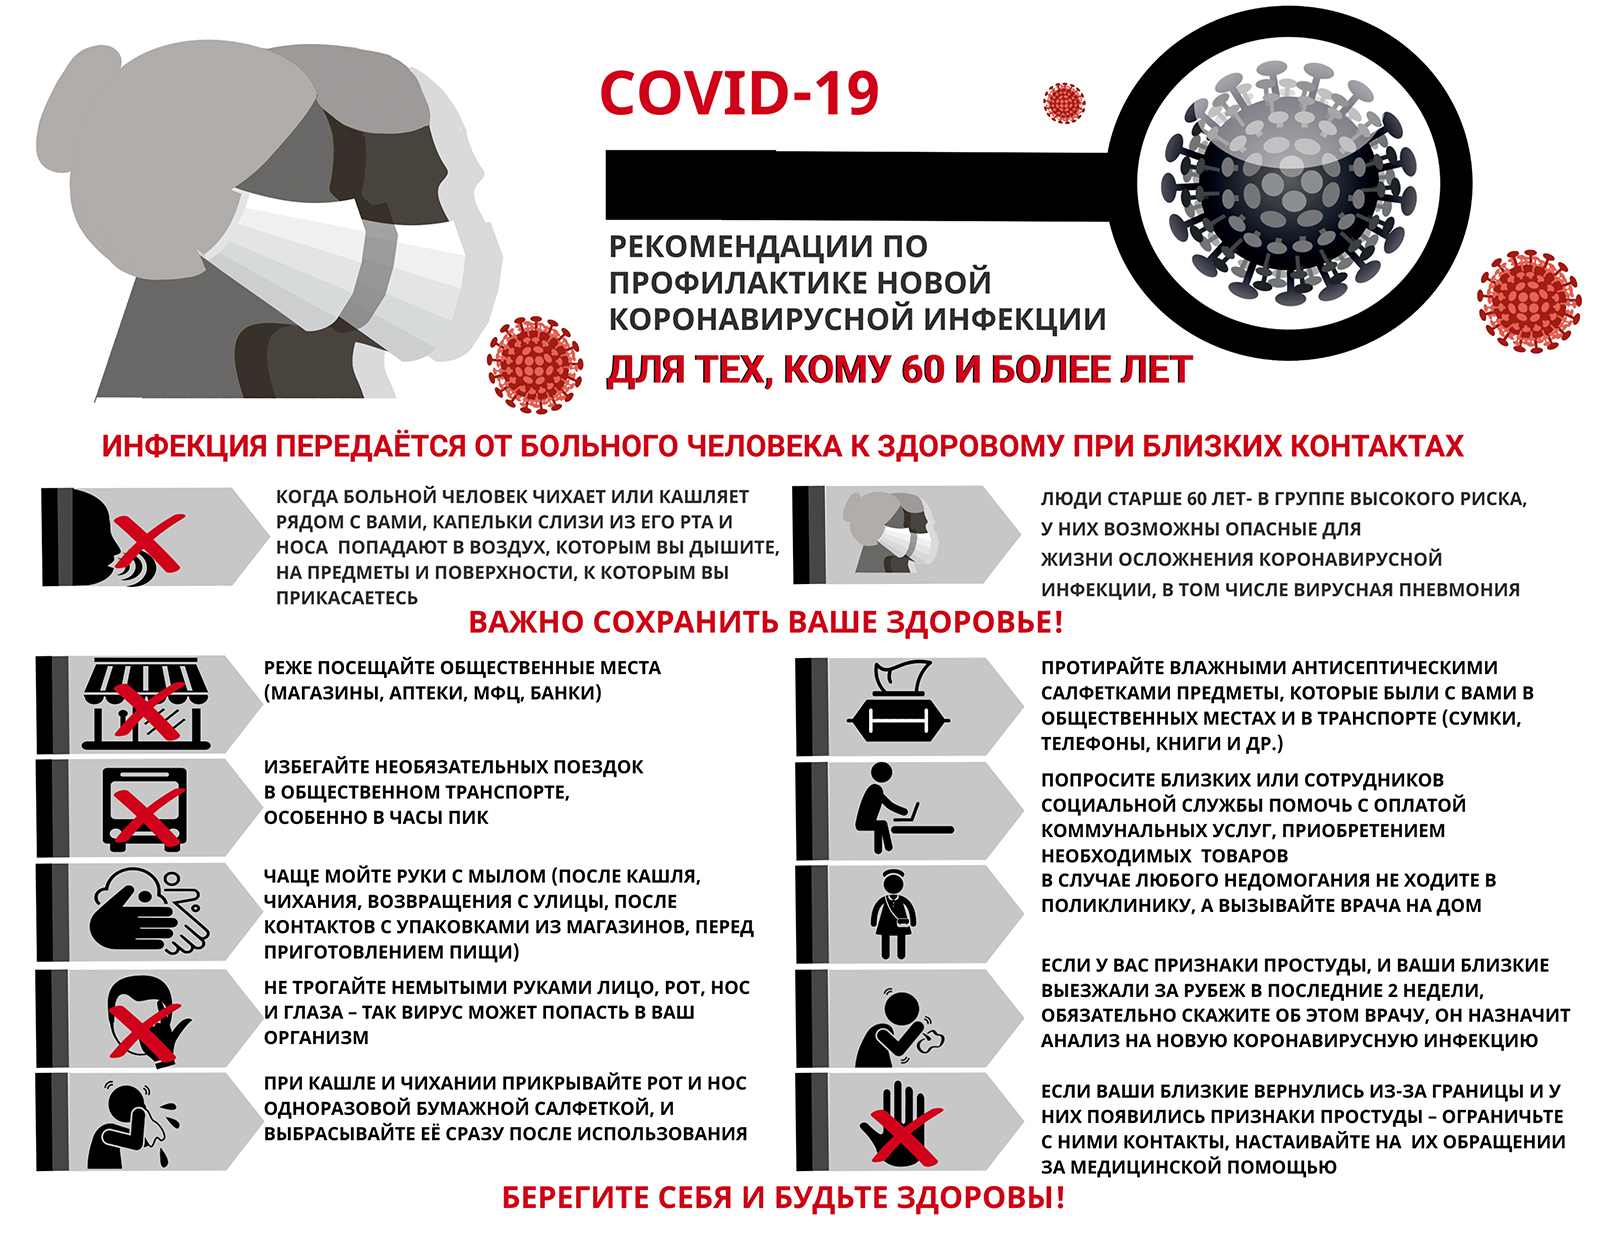 Рекомендации по профилактике новой коронавирусной инфекции для тех, кому 60 и более лет